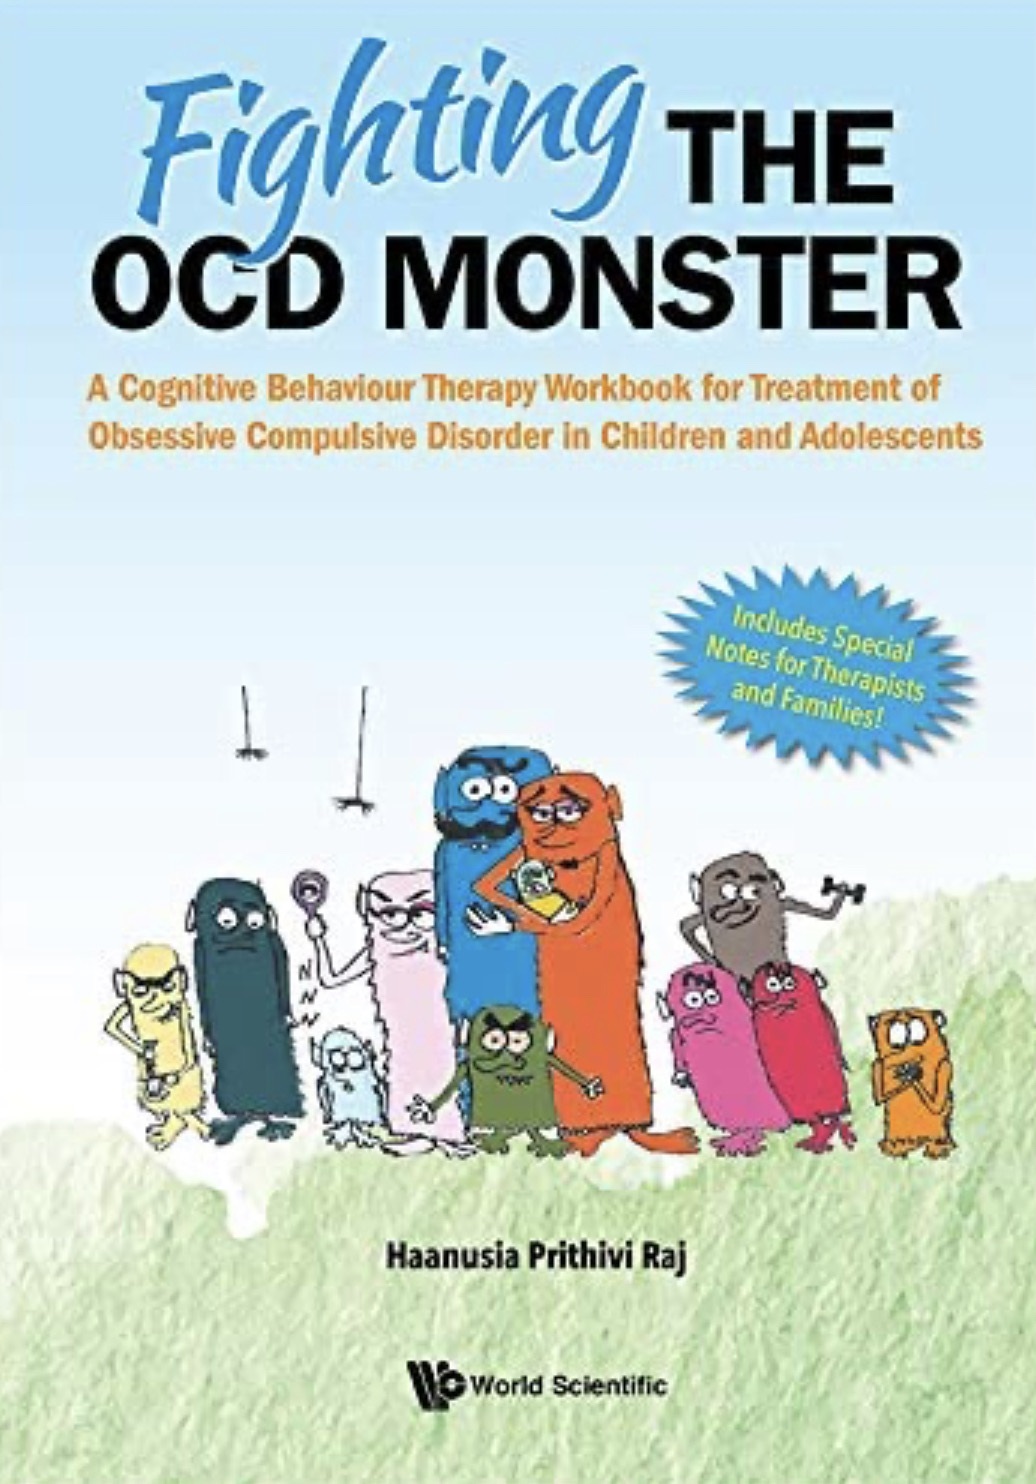 Fighting The OCD Monster